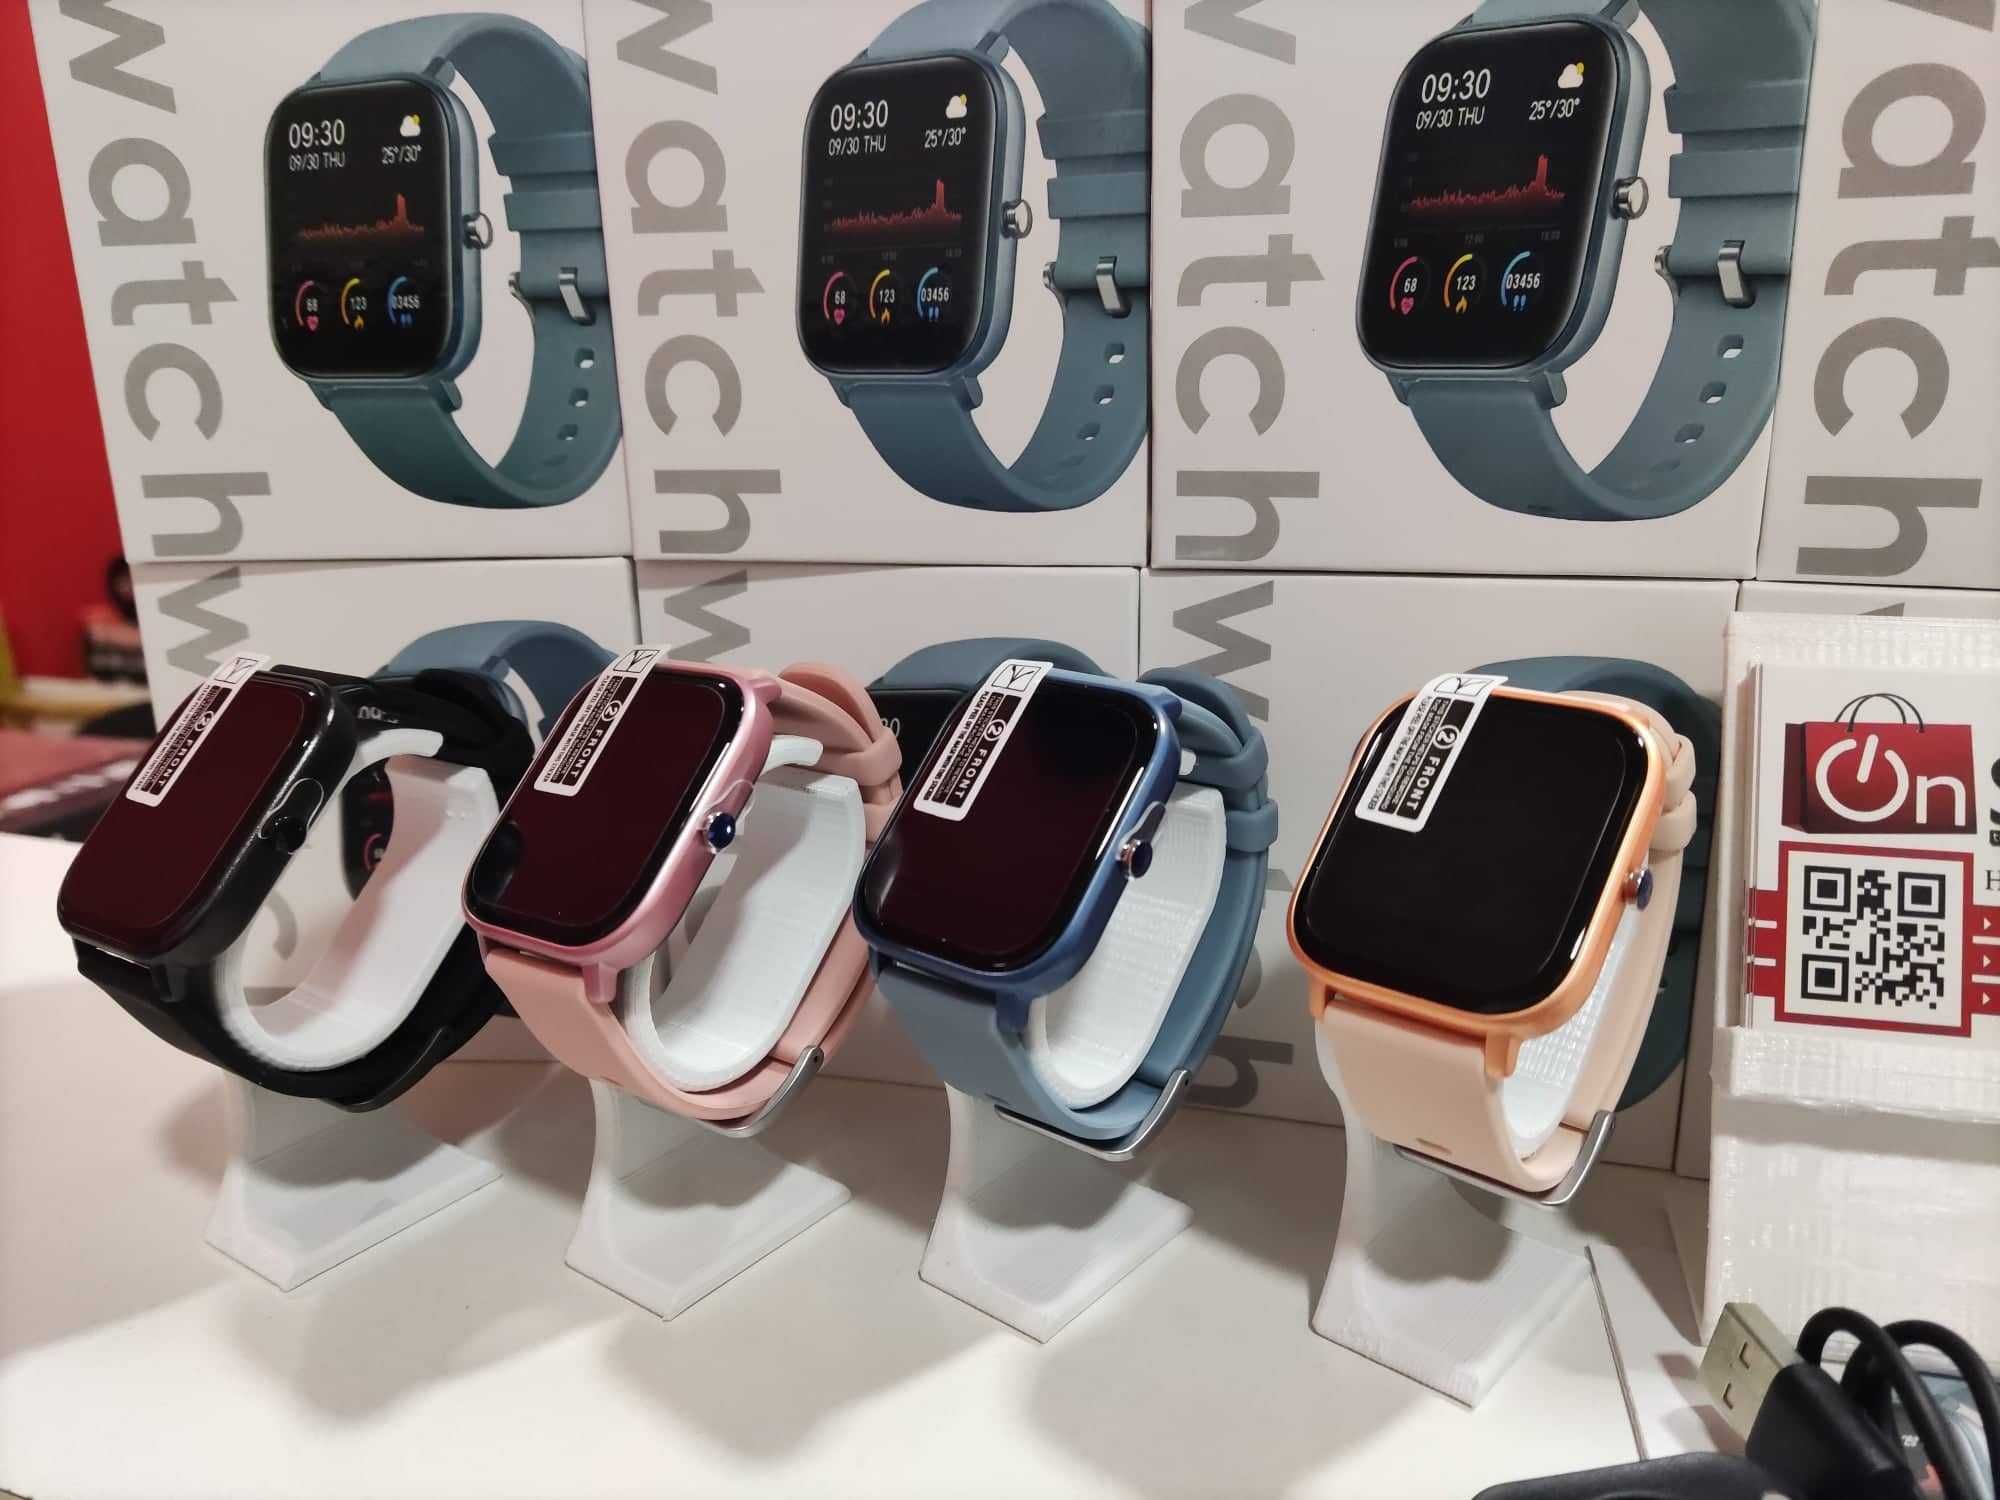 Smartwatch Colmi P8 - Várias cores disponíveis - Novos em loja